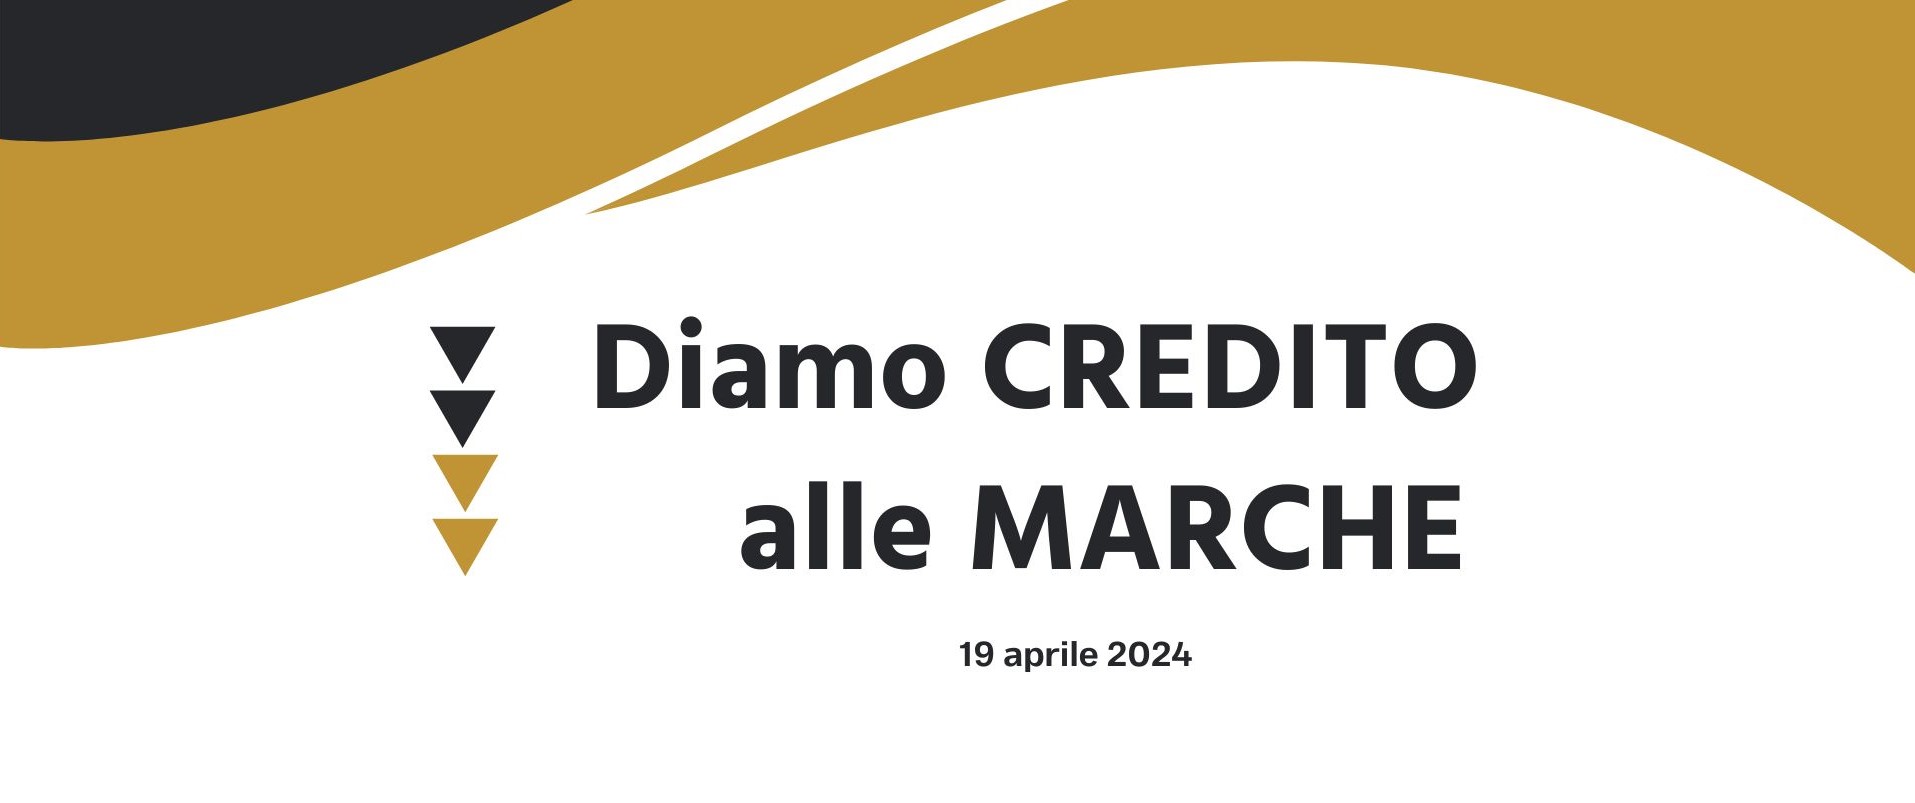 Convegno Fider: "Diamo Credito alle Marche" - 19 aprile 2024